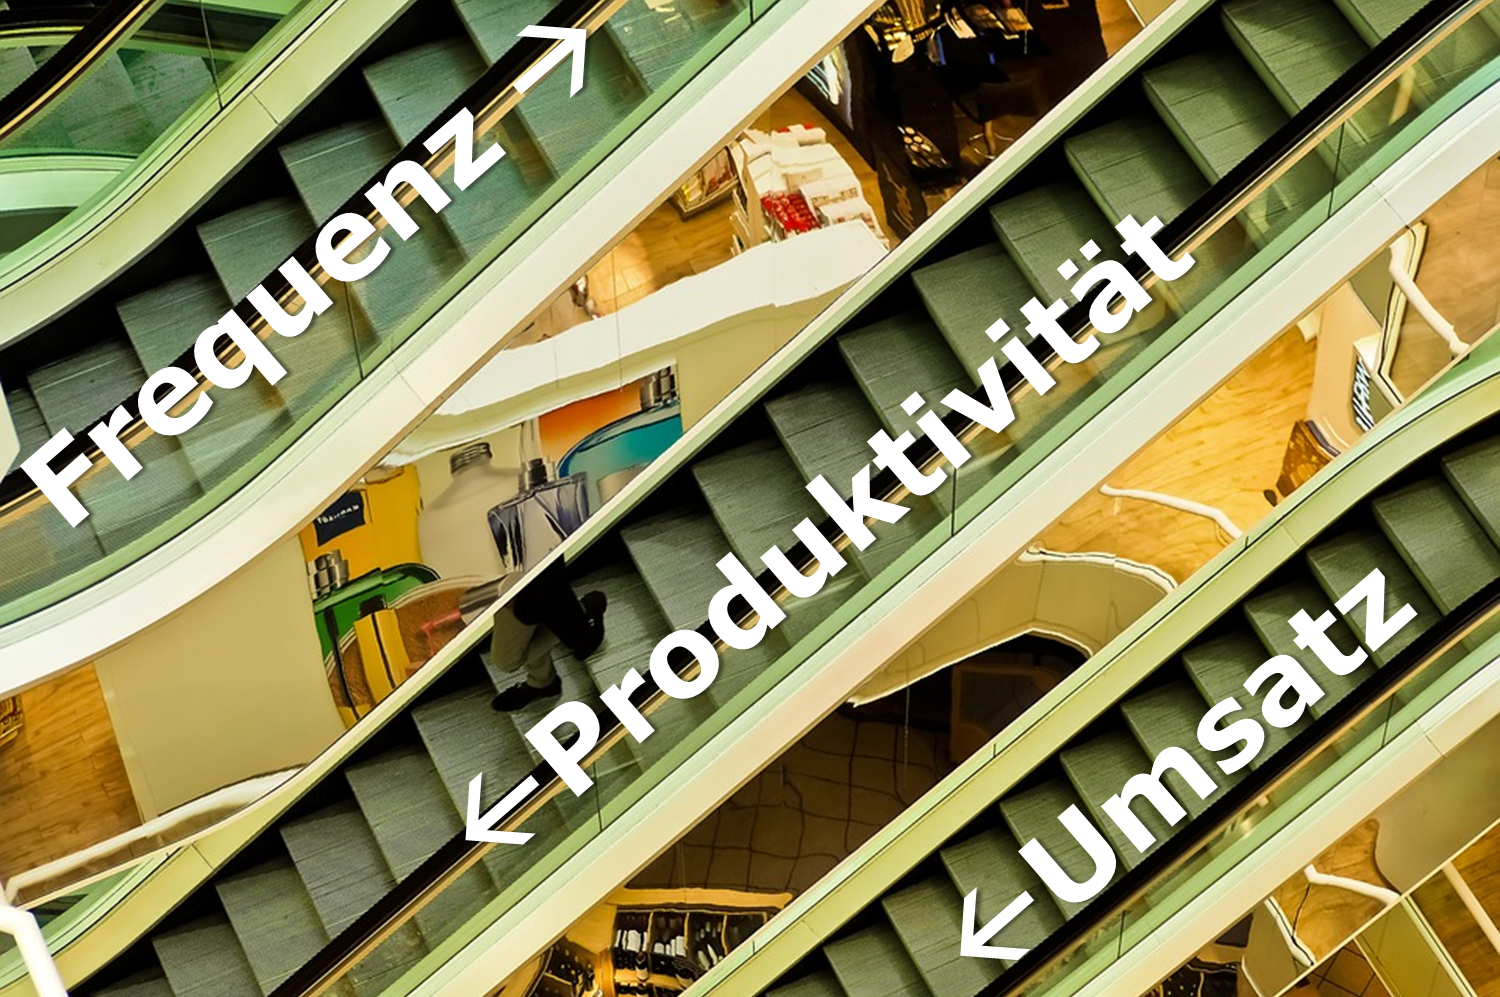 Entwicklung bei den Schweizer Shopping-Centern (weniger Umsatz, gesunkene Produktivität, erhöhte Frequenz) - Grafik: Carpathia / Bild: Pixabay